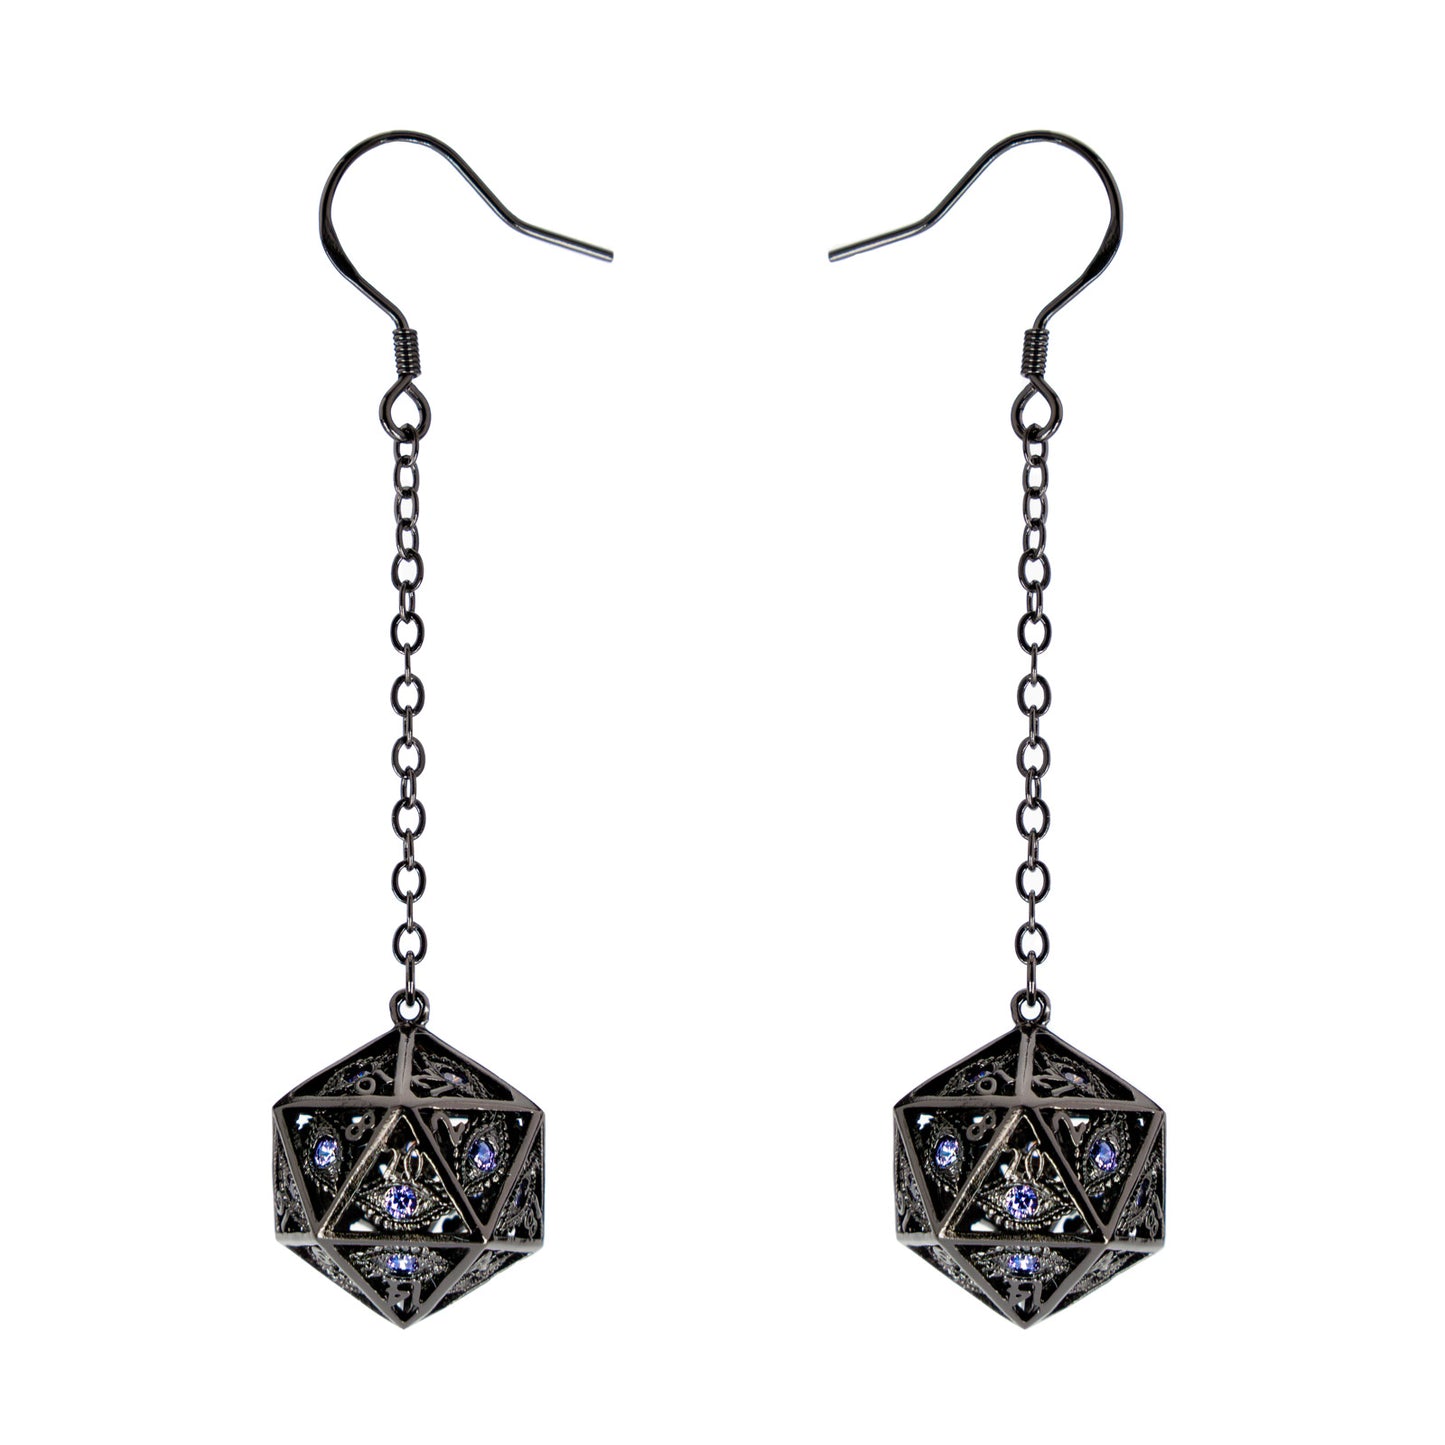 Dragon's eye D20 earrings-Gunmetal w/Purple gems